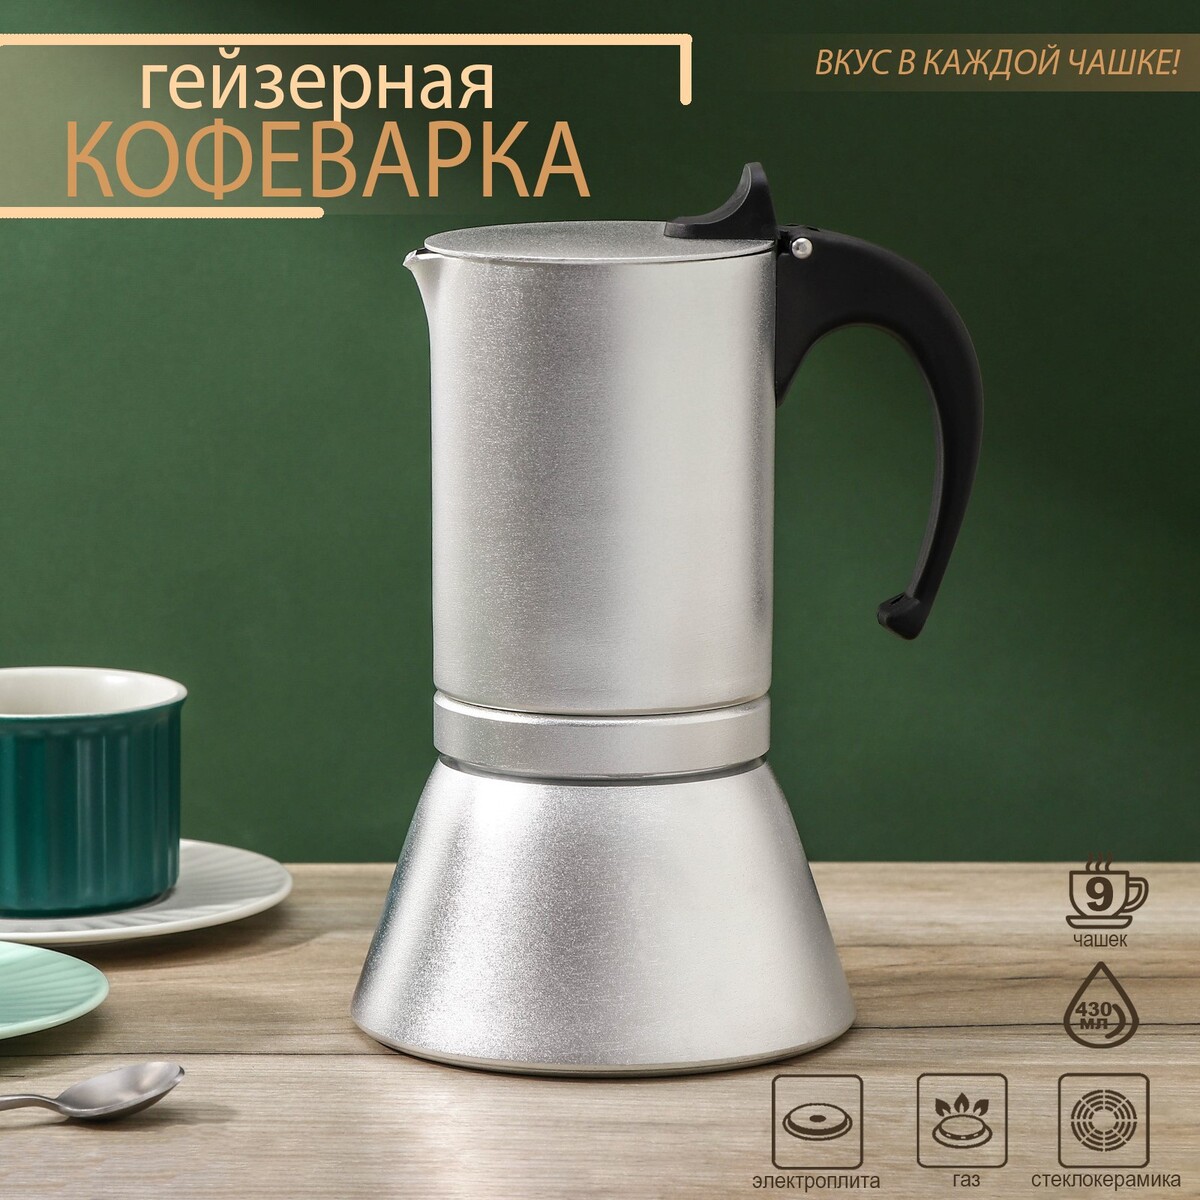 Кофеварка гейзерная magistro salem, на 9 чашек, 430 мл, индукция кофеварка гейзерная magistro moka на 6 чашек 300 мл